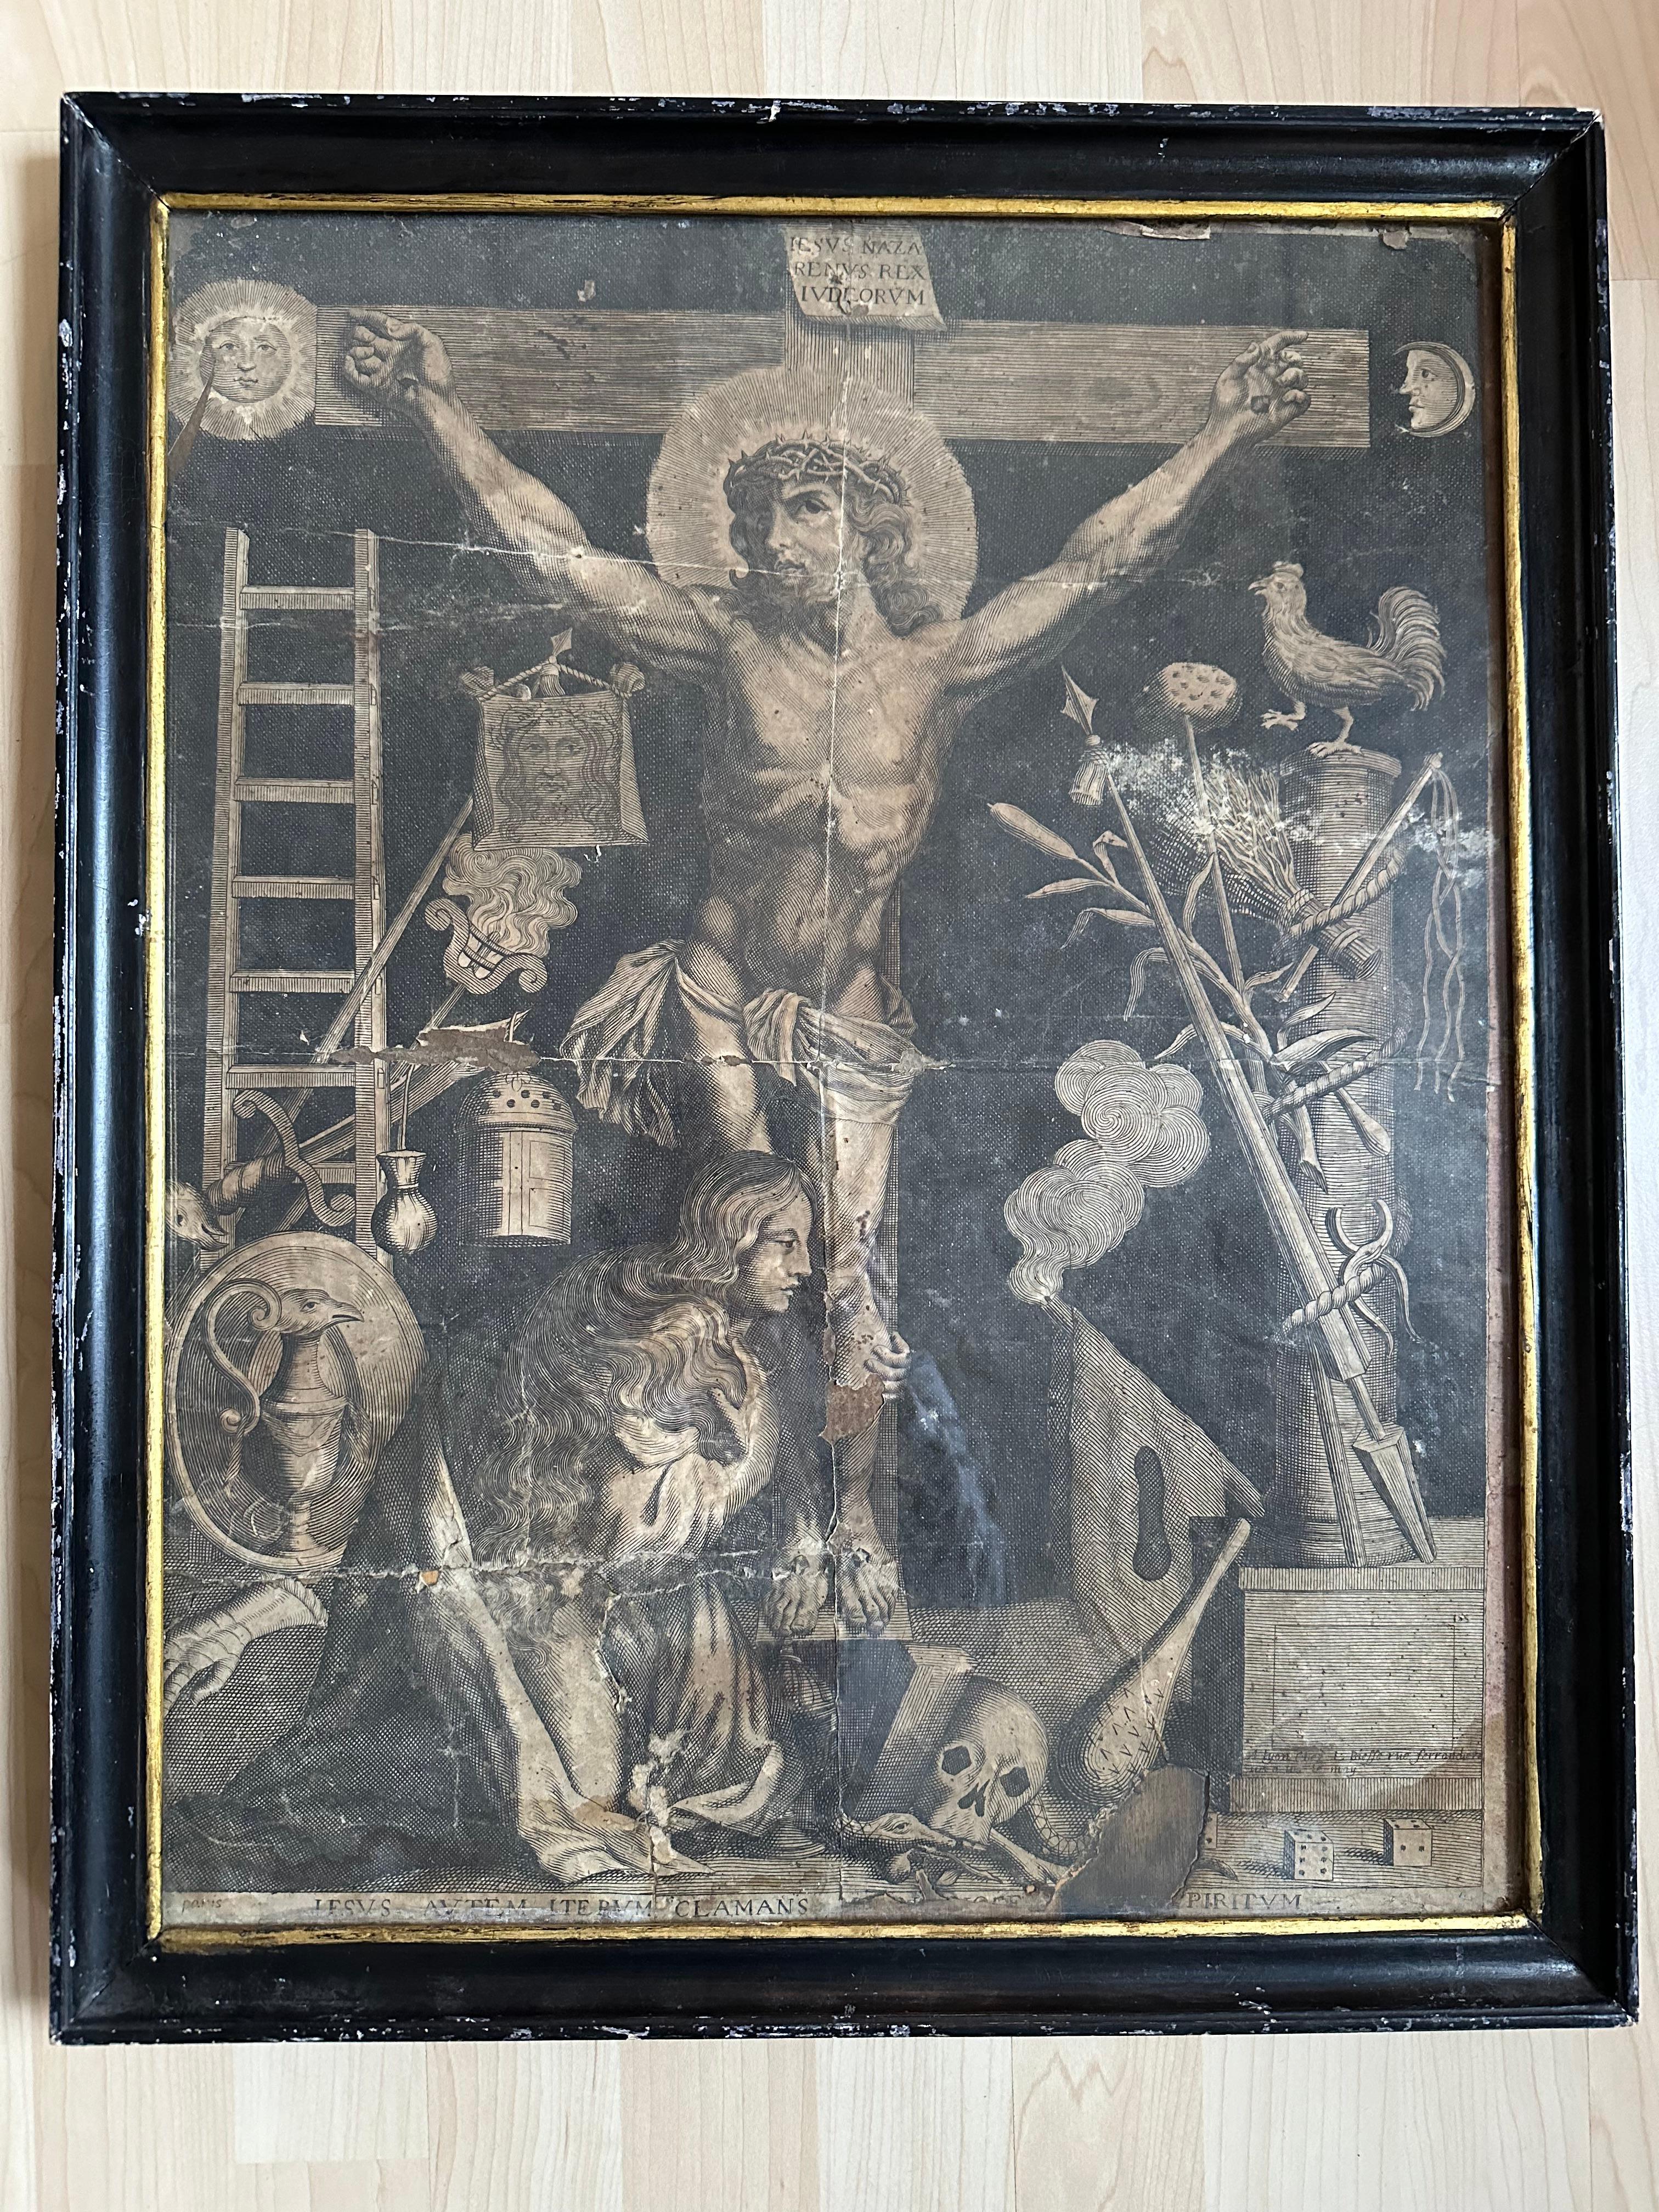 Dieser französische Kupferstich aus Paris aus dem 18. Jahrhundert, der die Kreuzigung Jesu mit Maria Magdalena zeigt, ist eine tiefgründige historische Erzählung. Dieses symbolträchtige Kunstwerk bietet einen Einblick in die religiösen und